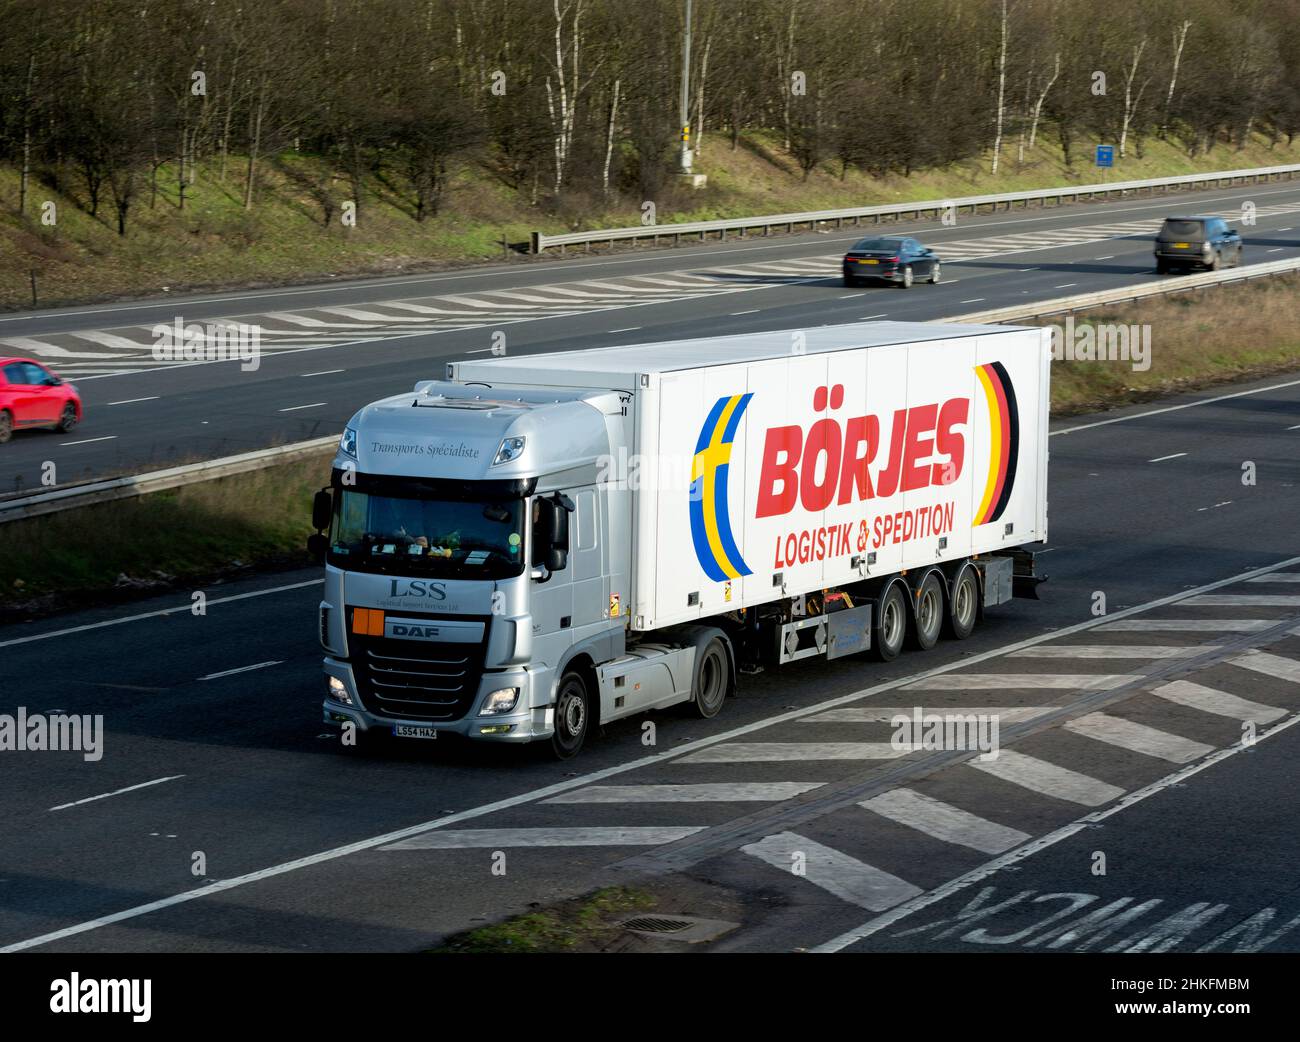 Cabina per camion LSS con rimorchio Borjes, autostrada M40, Warwickshire, Regno Unito Foto Stock